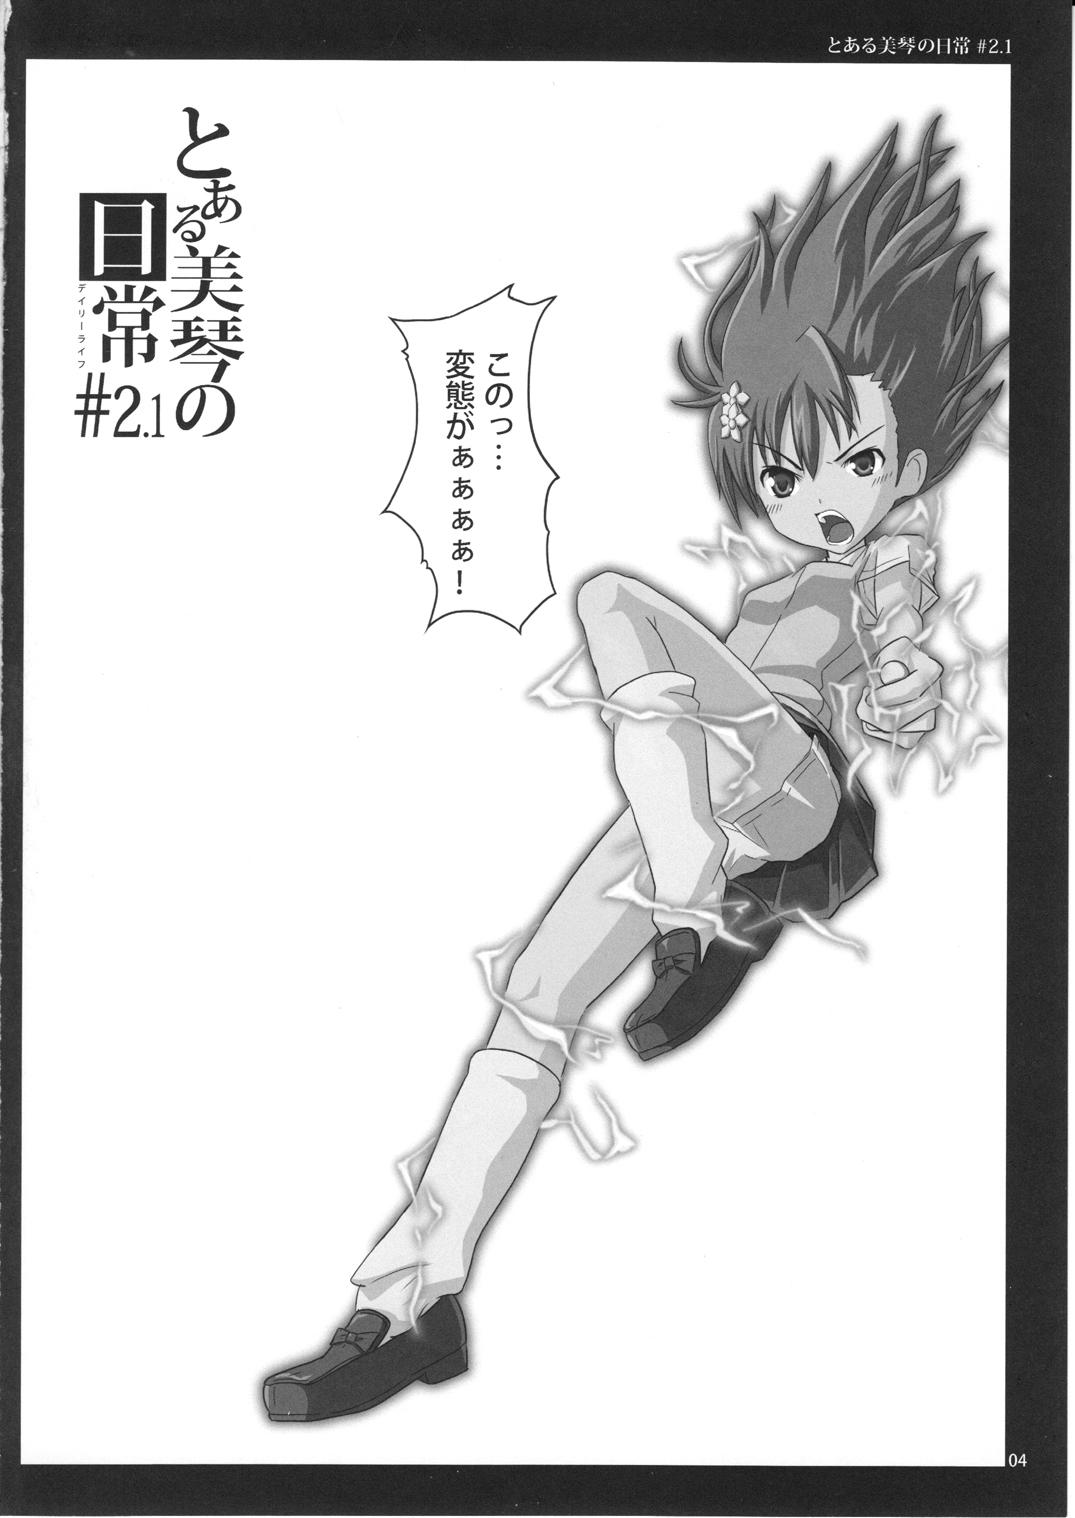 Ngentot To Aru Mikoto no Nichijou 2.1 - Toaru kagaku no railgun Story - Page 4